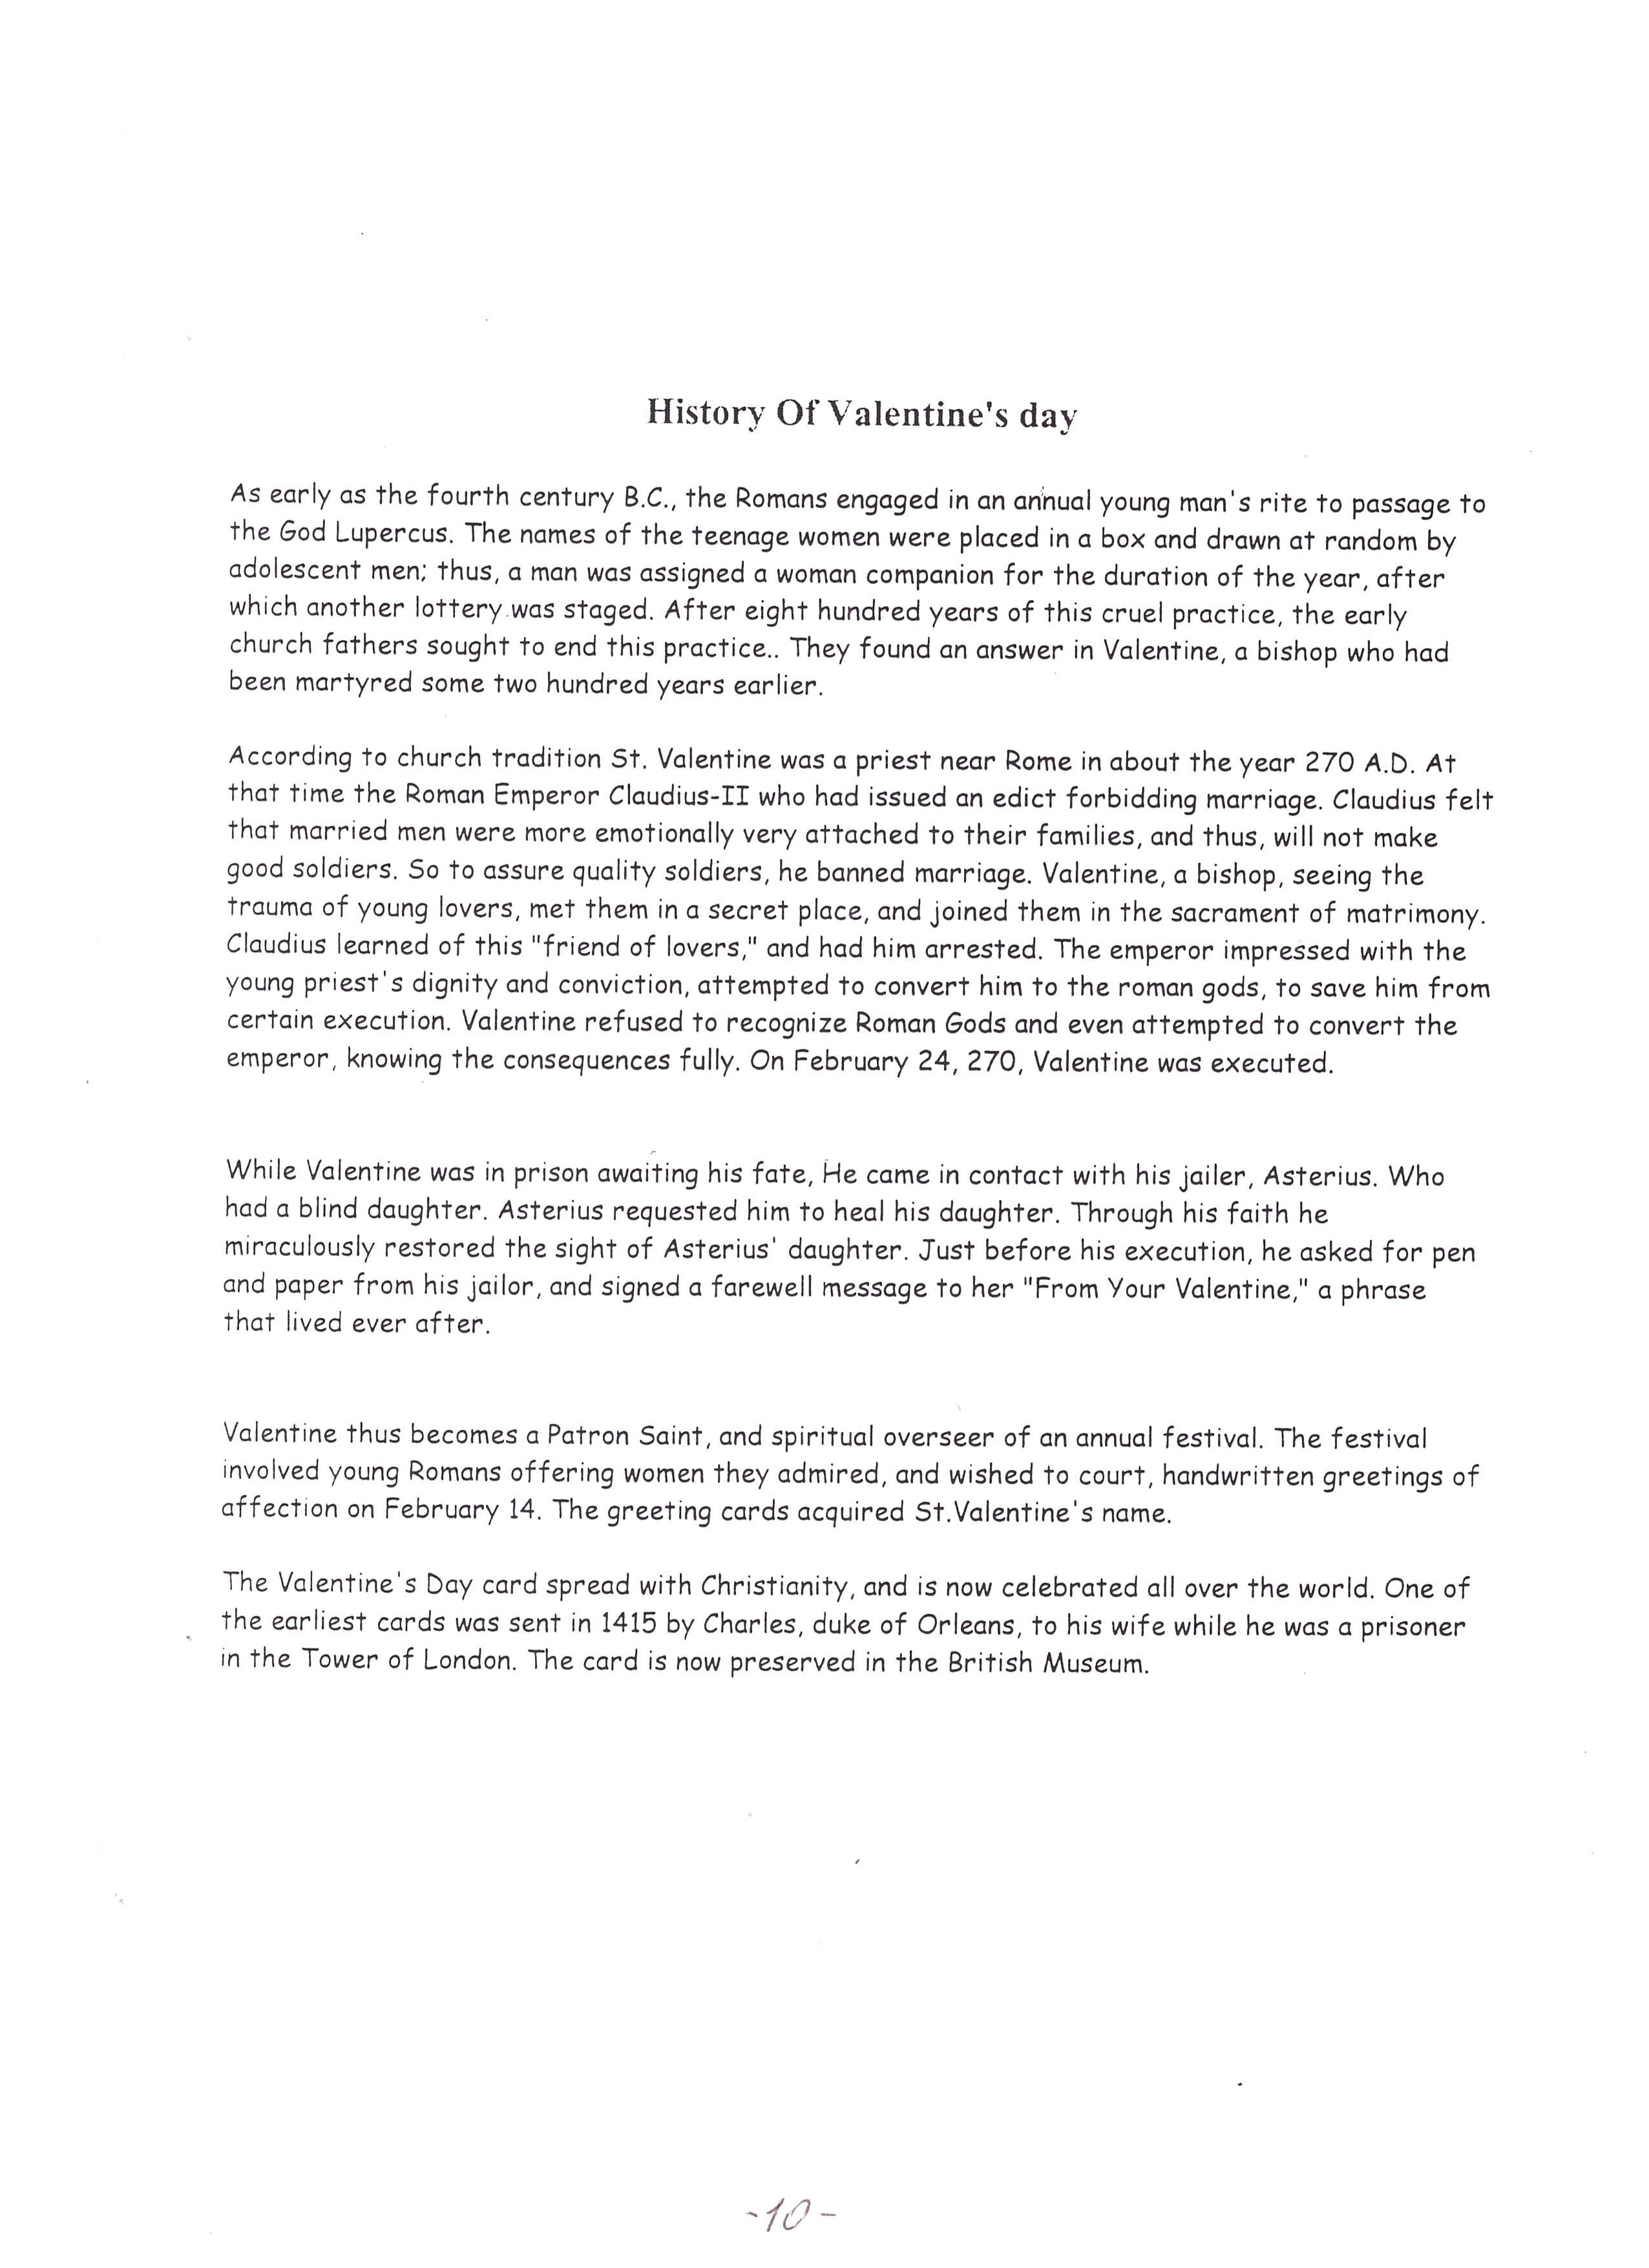 Конспект внеурочного мероприятия к празднику День Святого Валентина